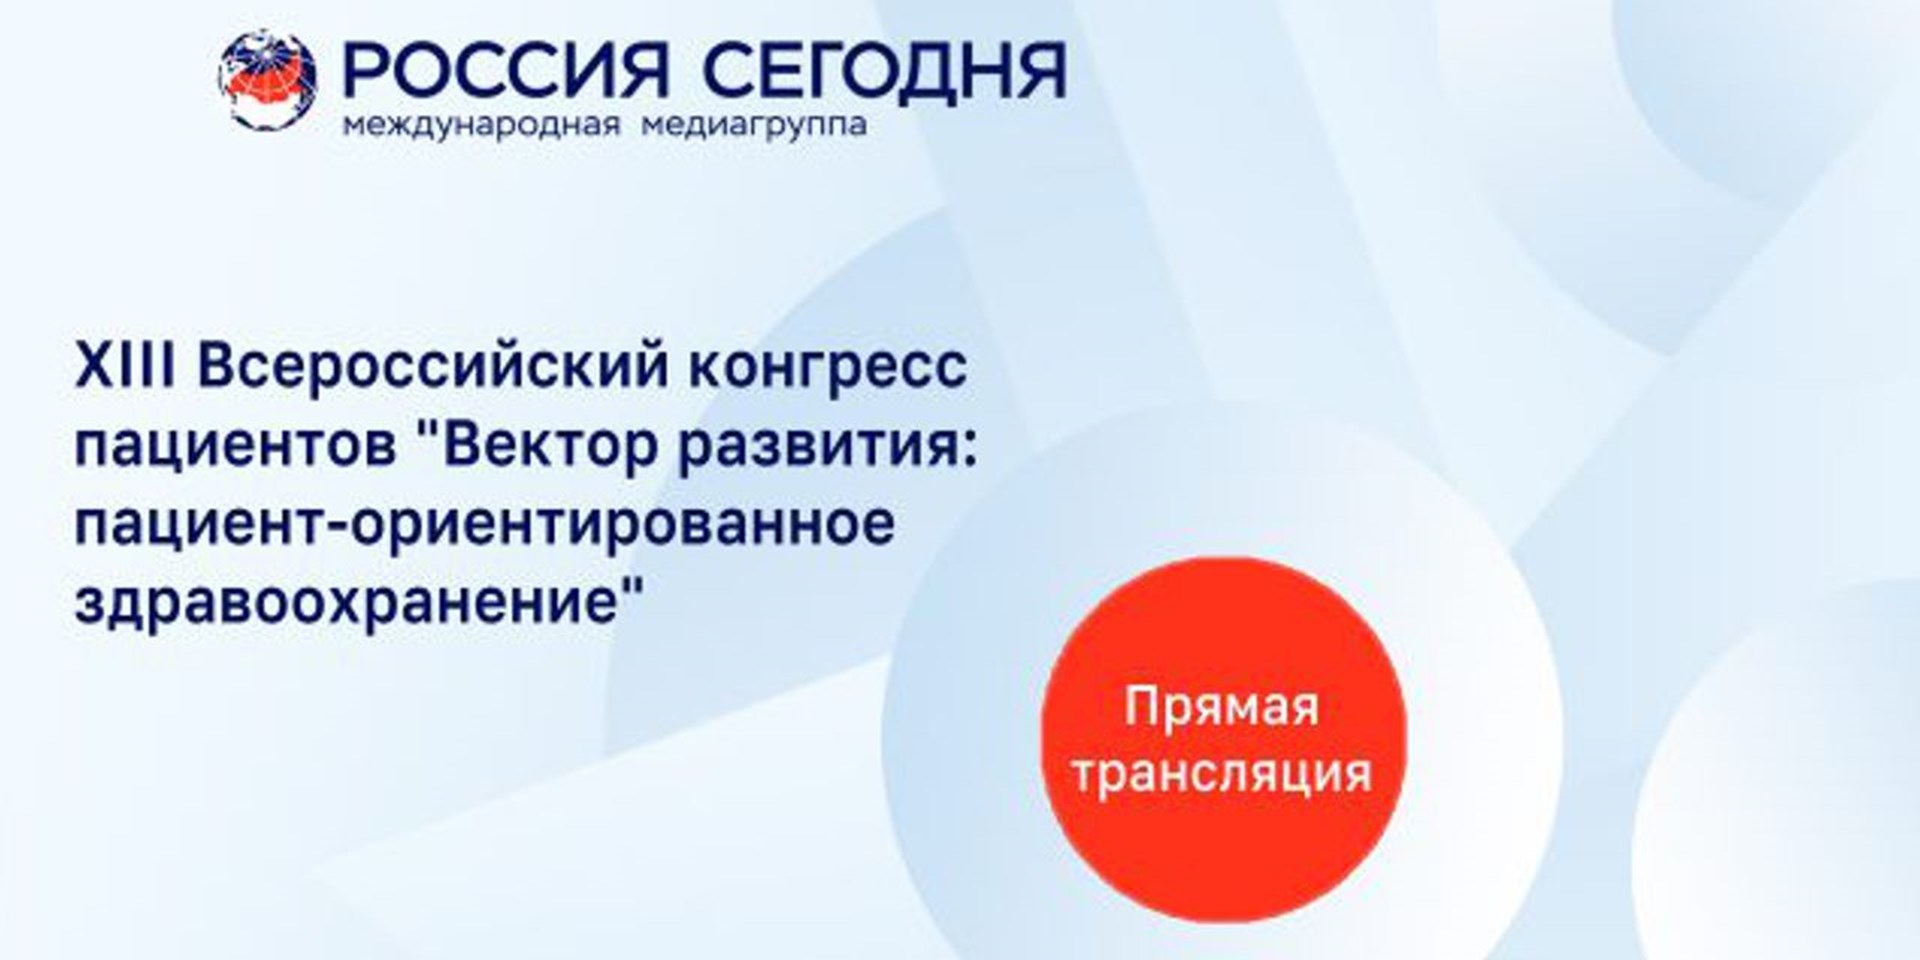 XIII Всероссийский конгресс пациентов "Вектор развития: пациент-ориентированное здравоохранение"